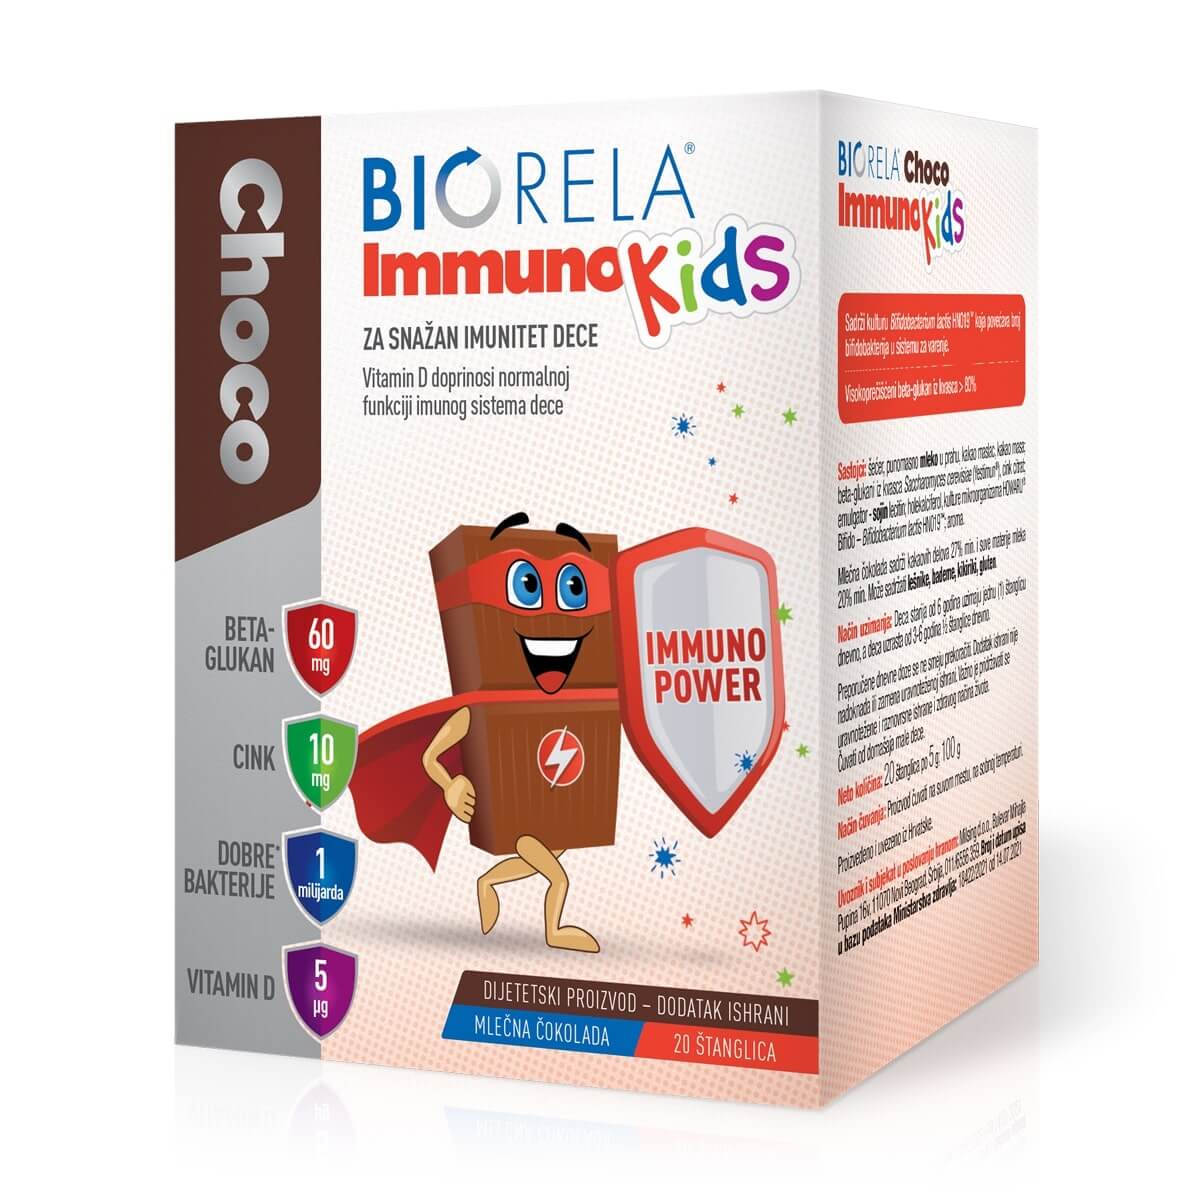 Biorela Immuno kids, 20 čokoladnih štanglica